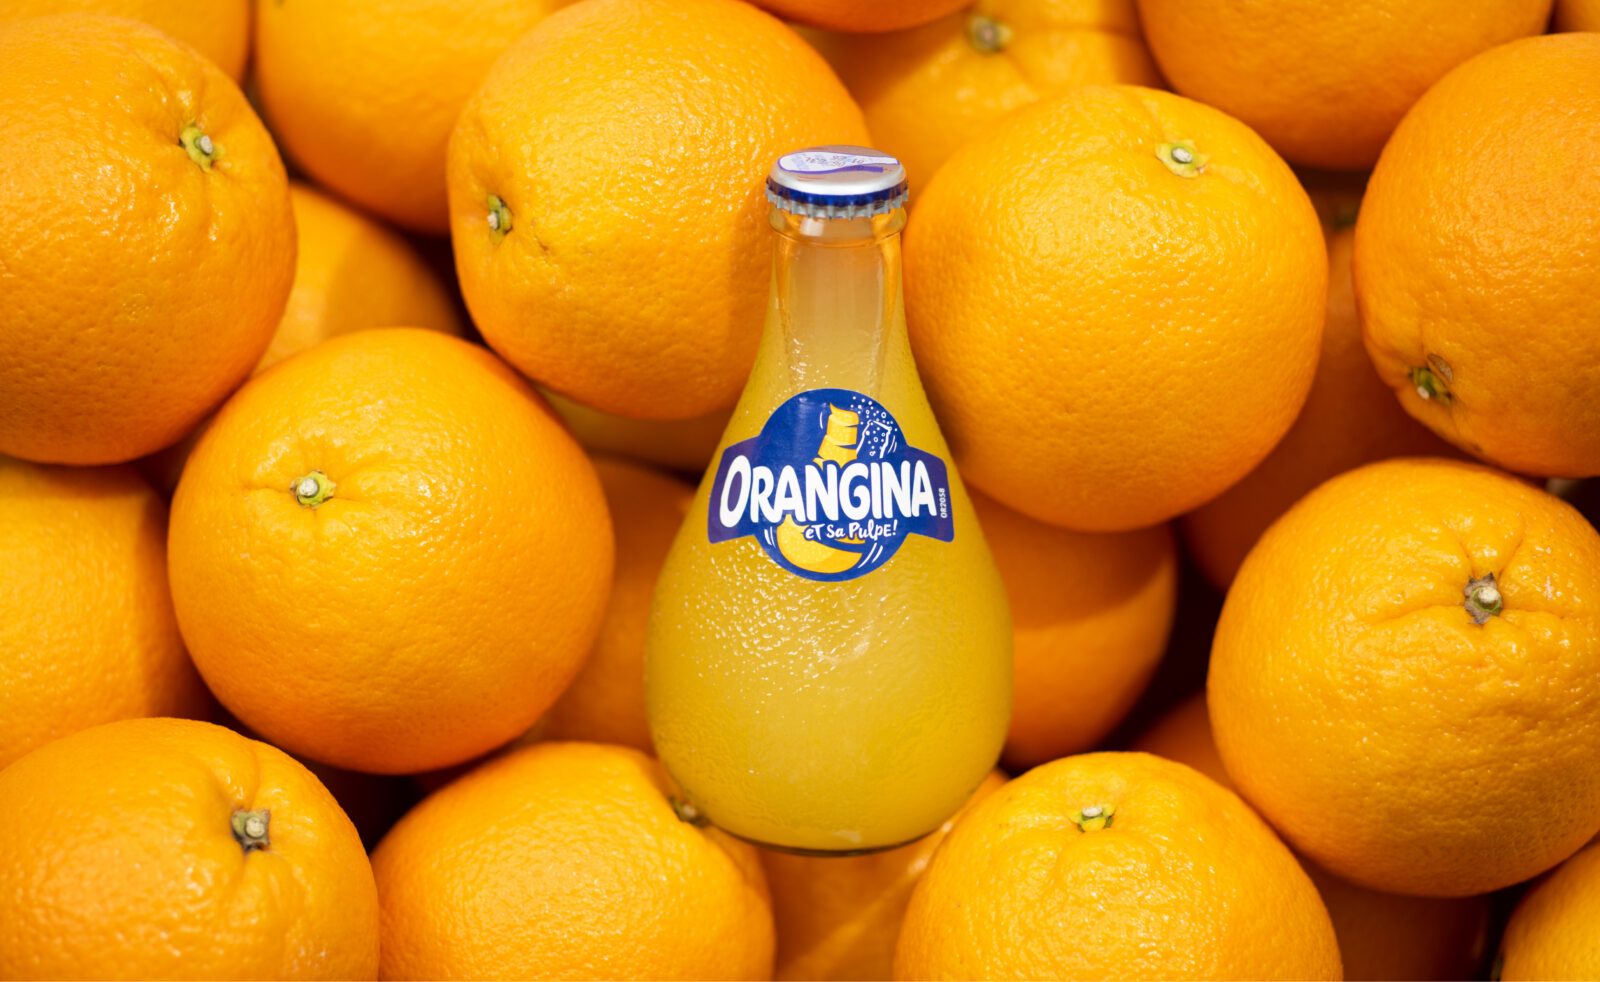 Orangina et oranges